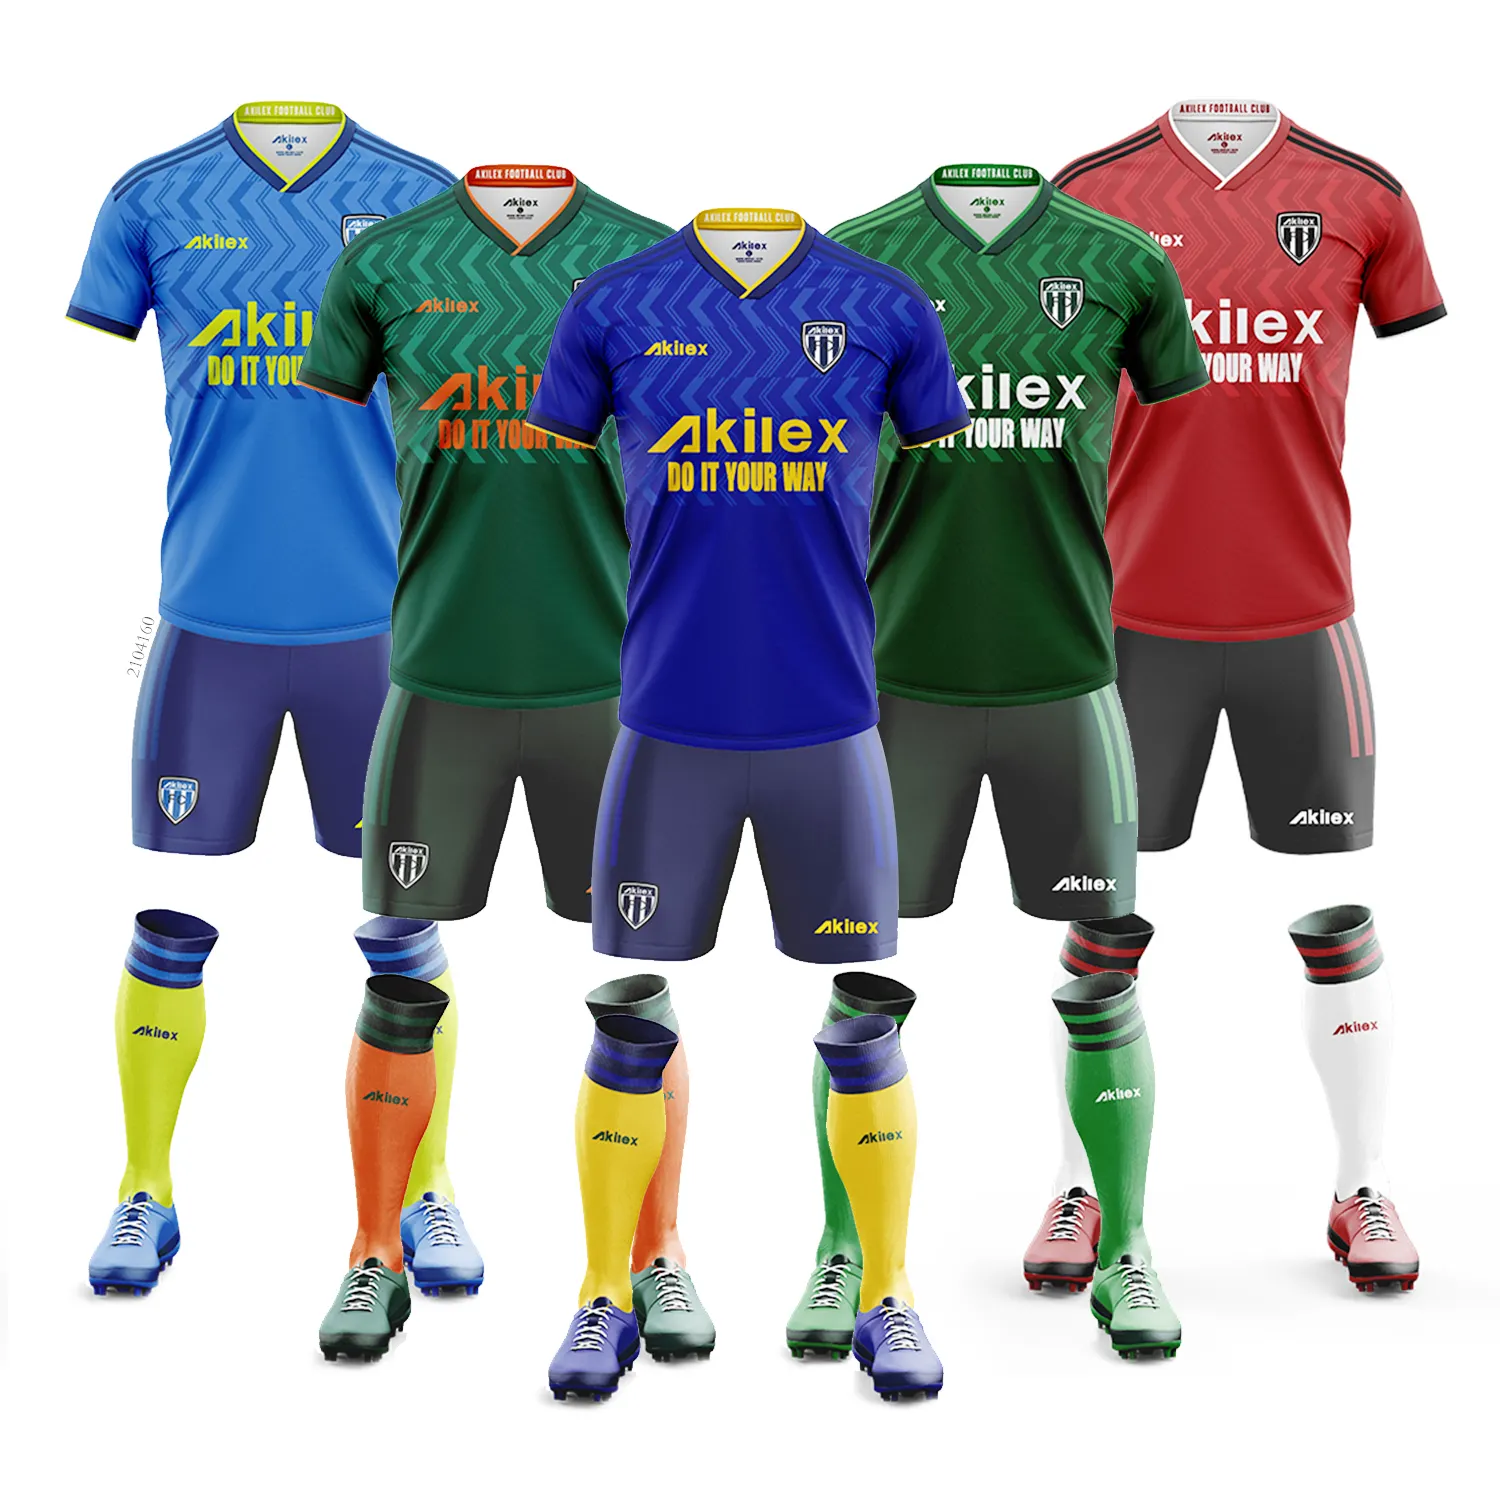 Akilex özel kraliyet mavi son yeni tasarım OEM ODM custom made takım spor kulübü hızlı kuru hafif erkekler futbol kıyafeti